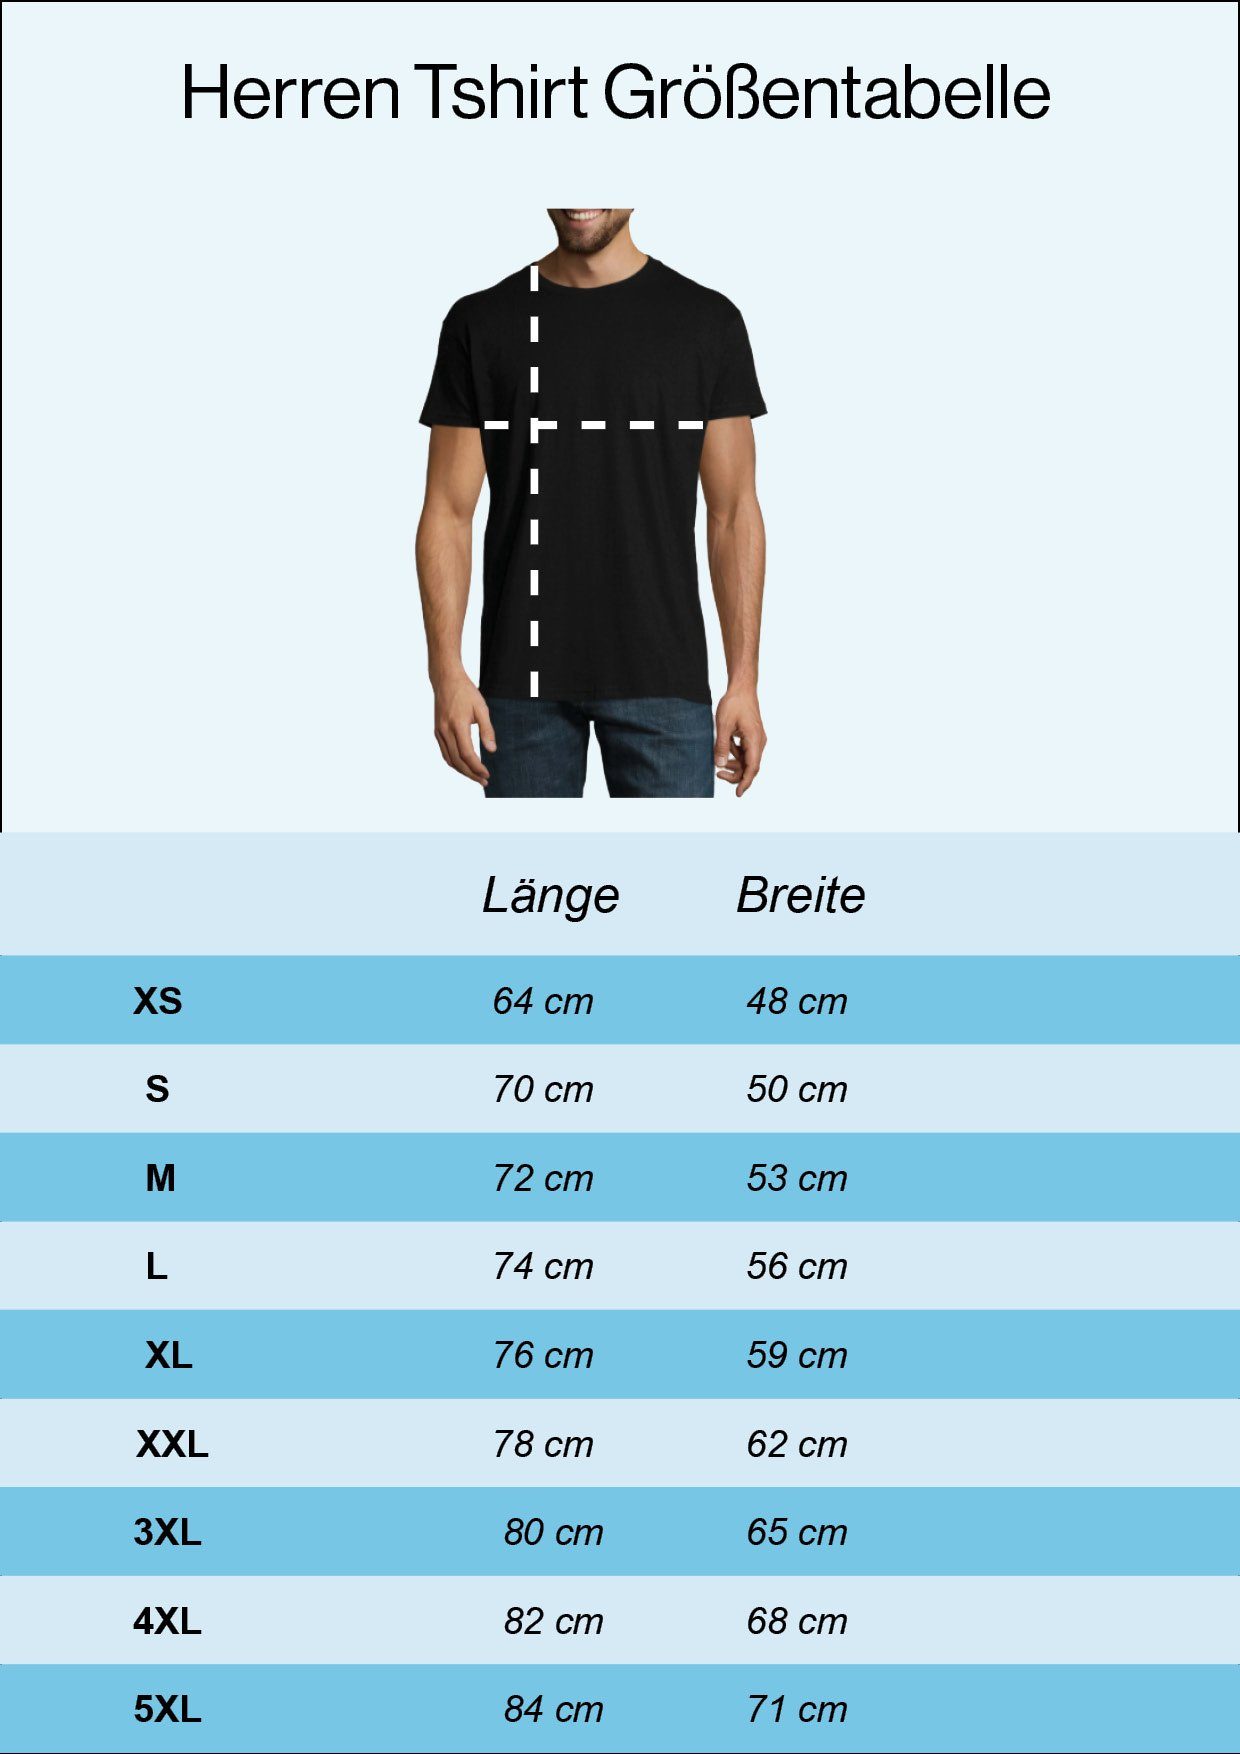 Youth Designz T-Shirt Allez Schwarz trendigem La France Herren Shirt Frontprint mit